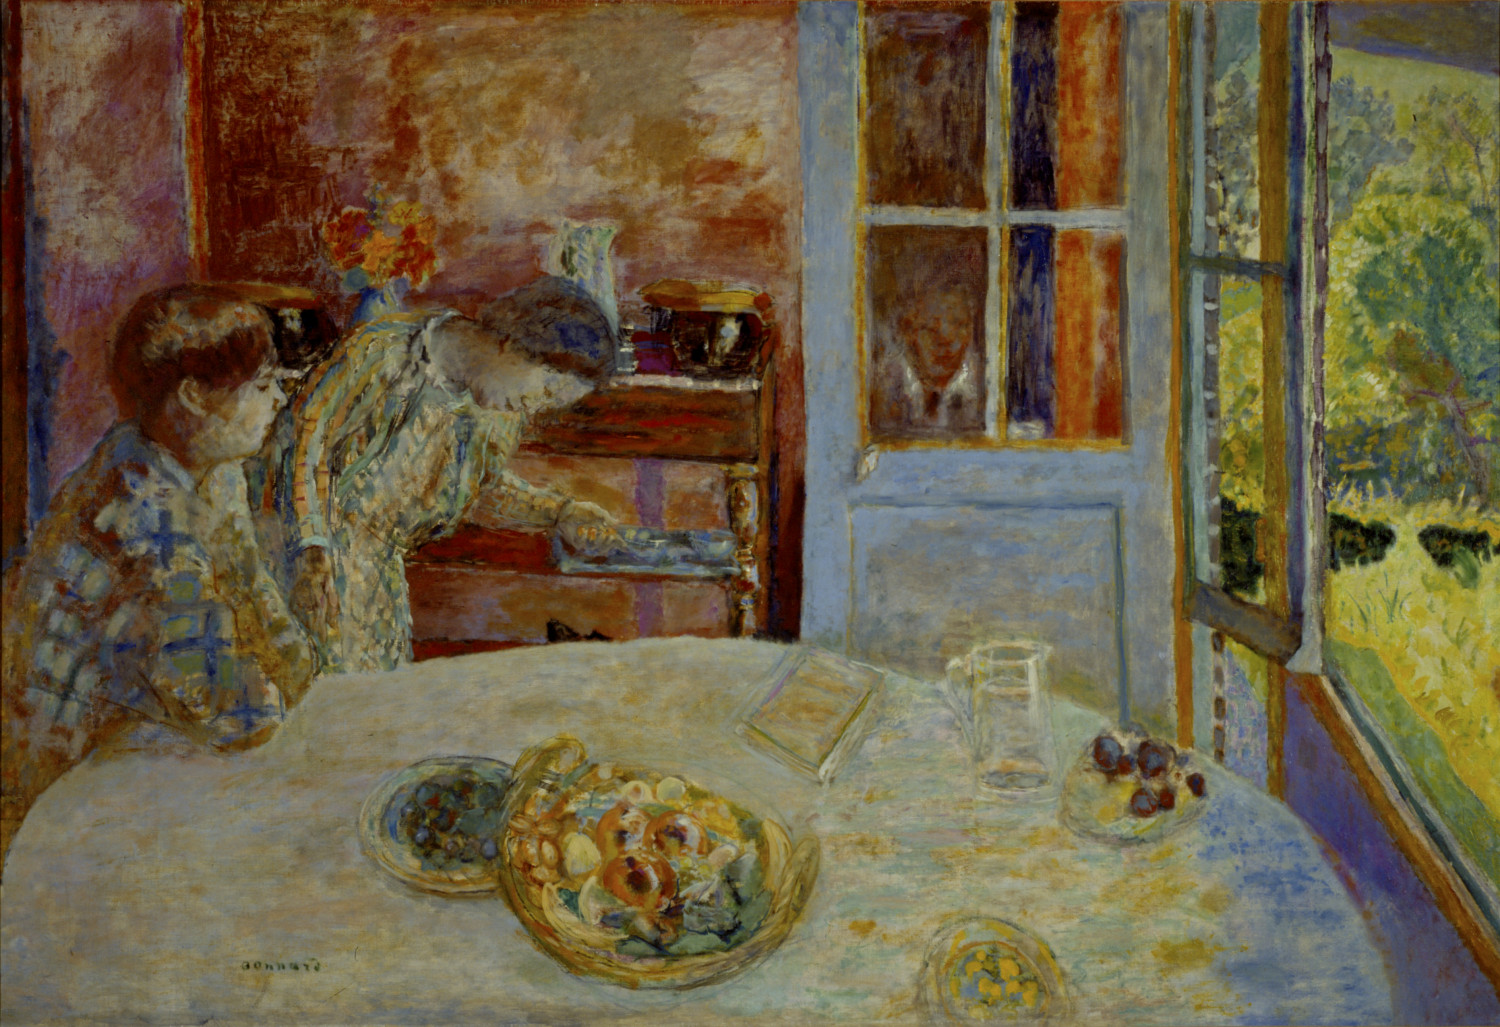 Pierre Bonnard – The Colour of Memory